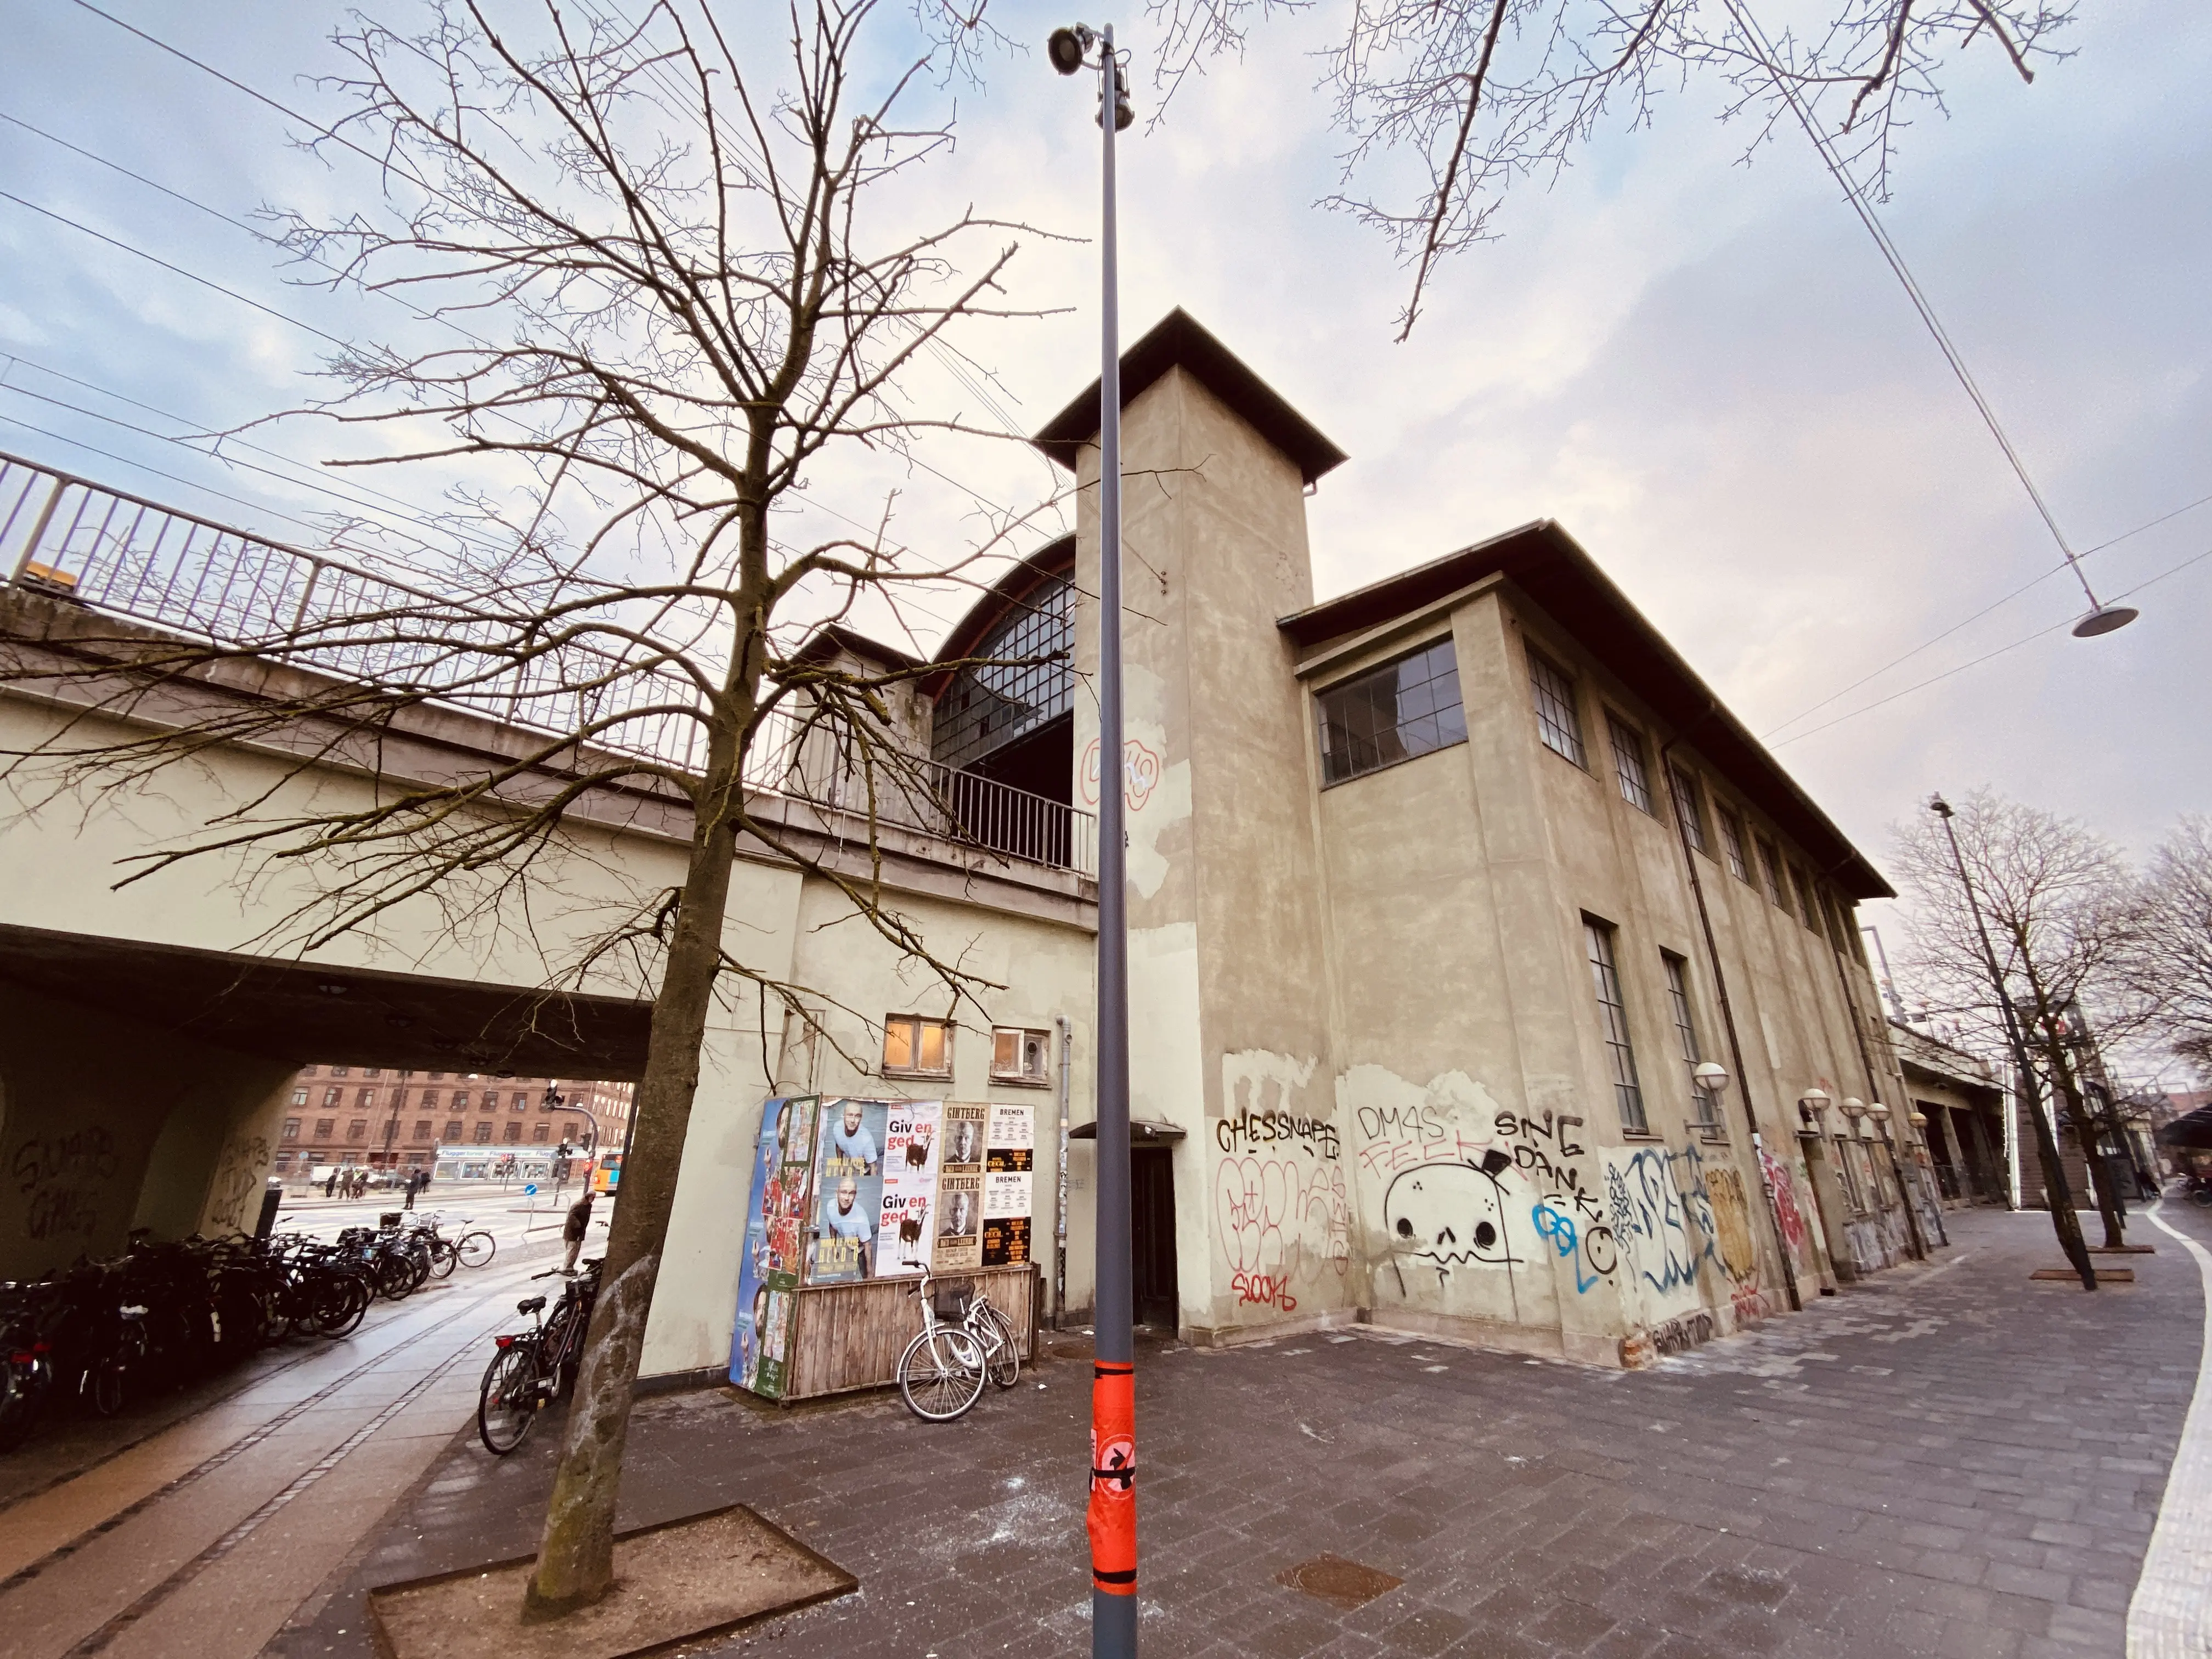 Billede af Nørrebro Station.